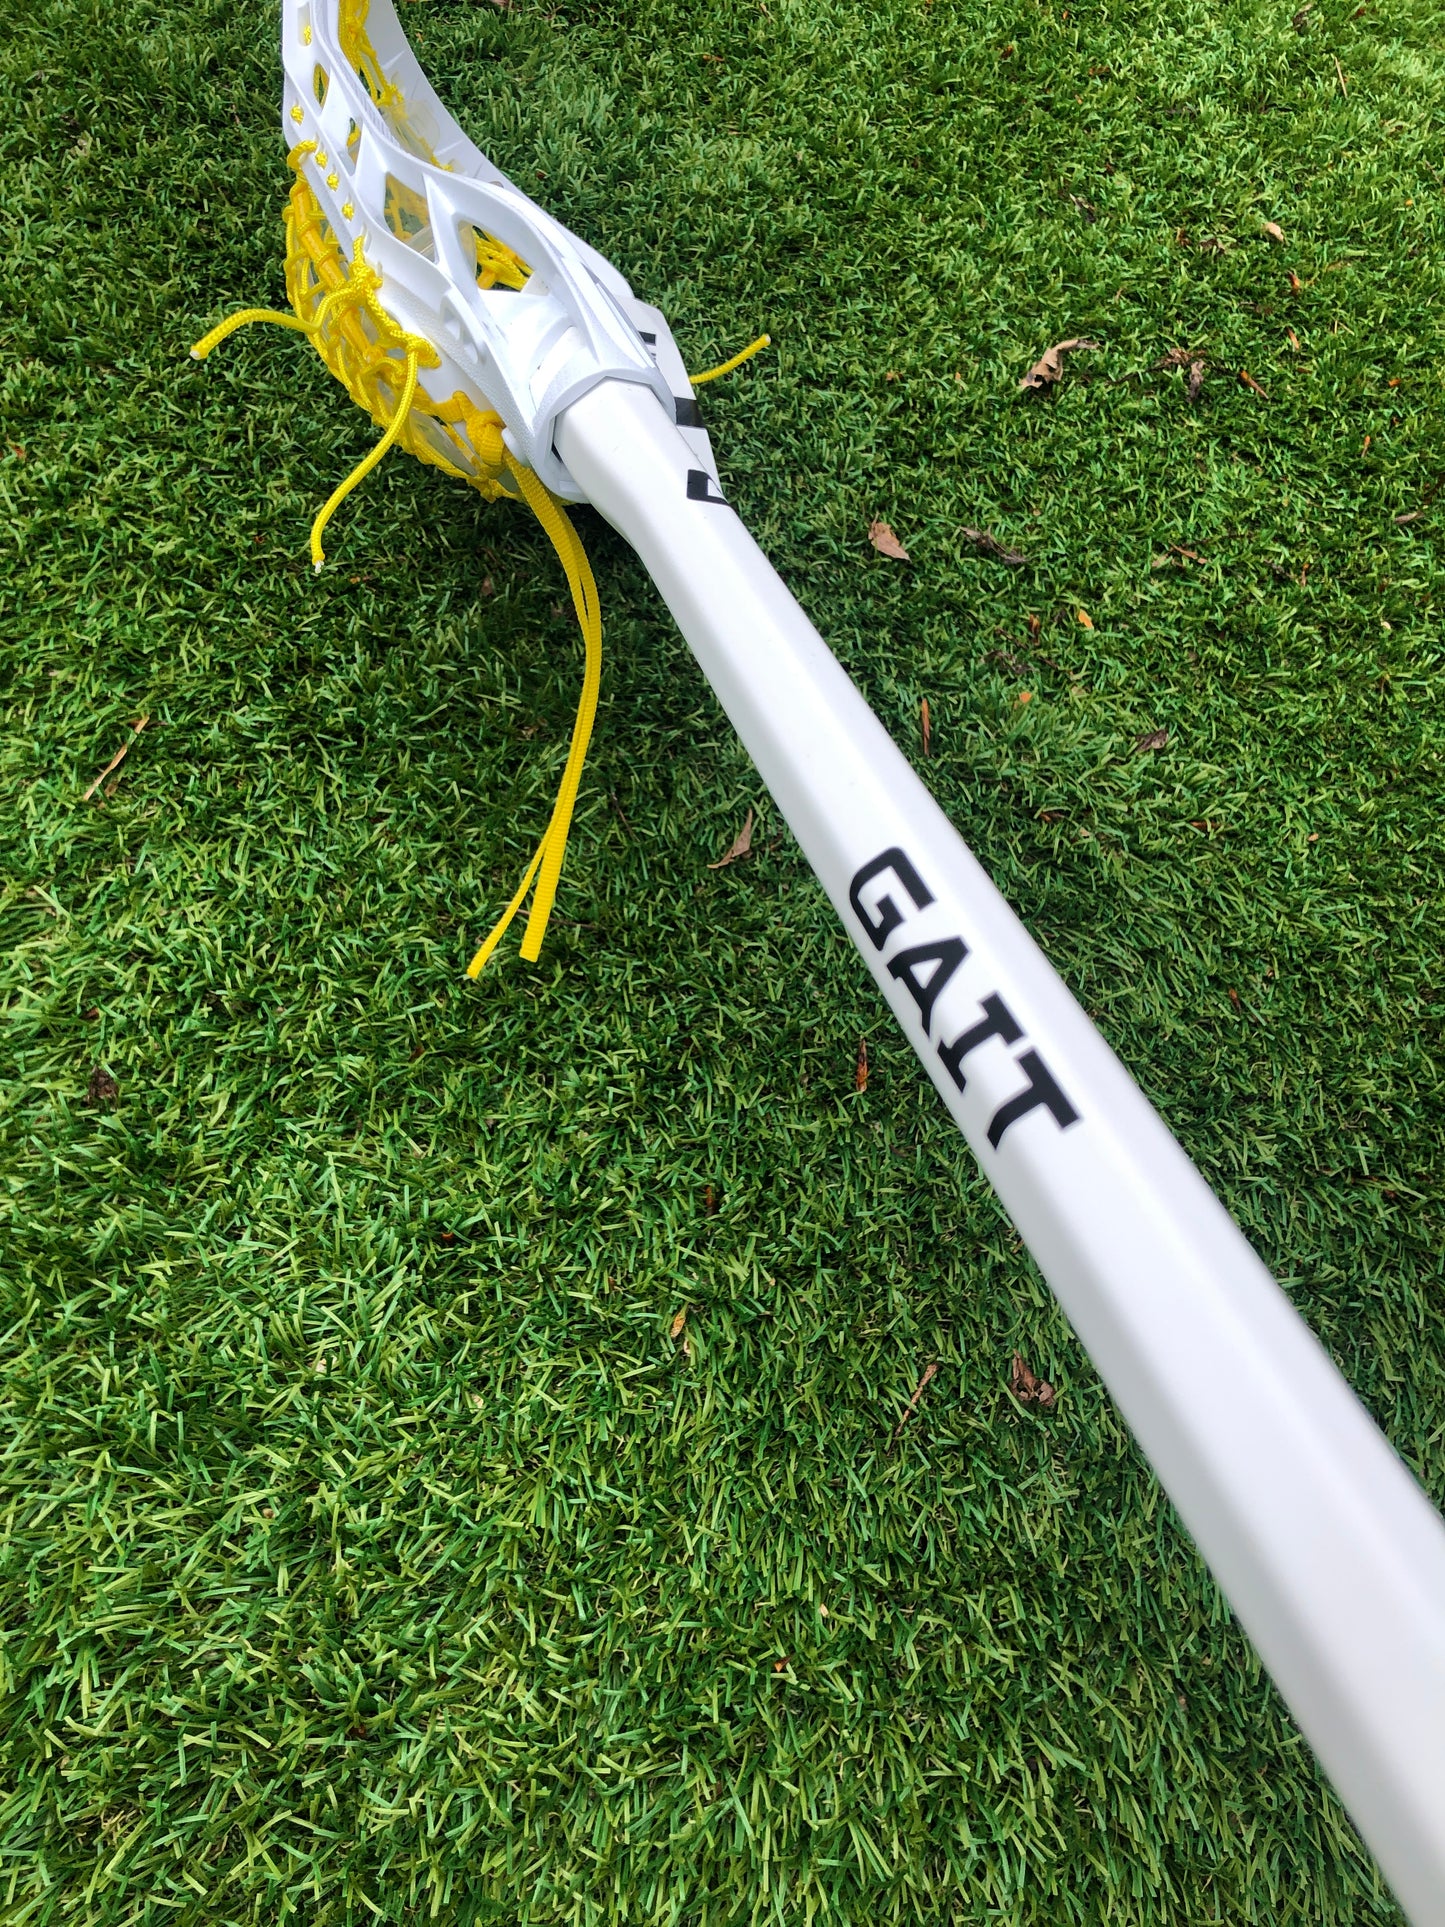 Gait Air Elite Complete Women's Lacrosse Stick